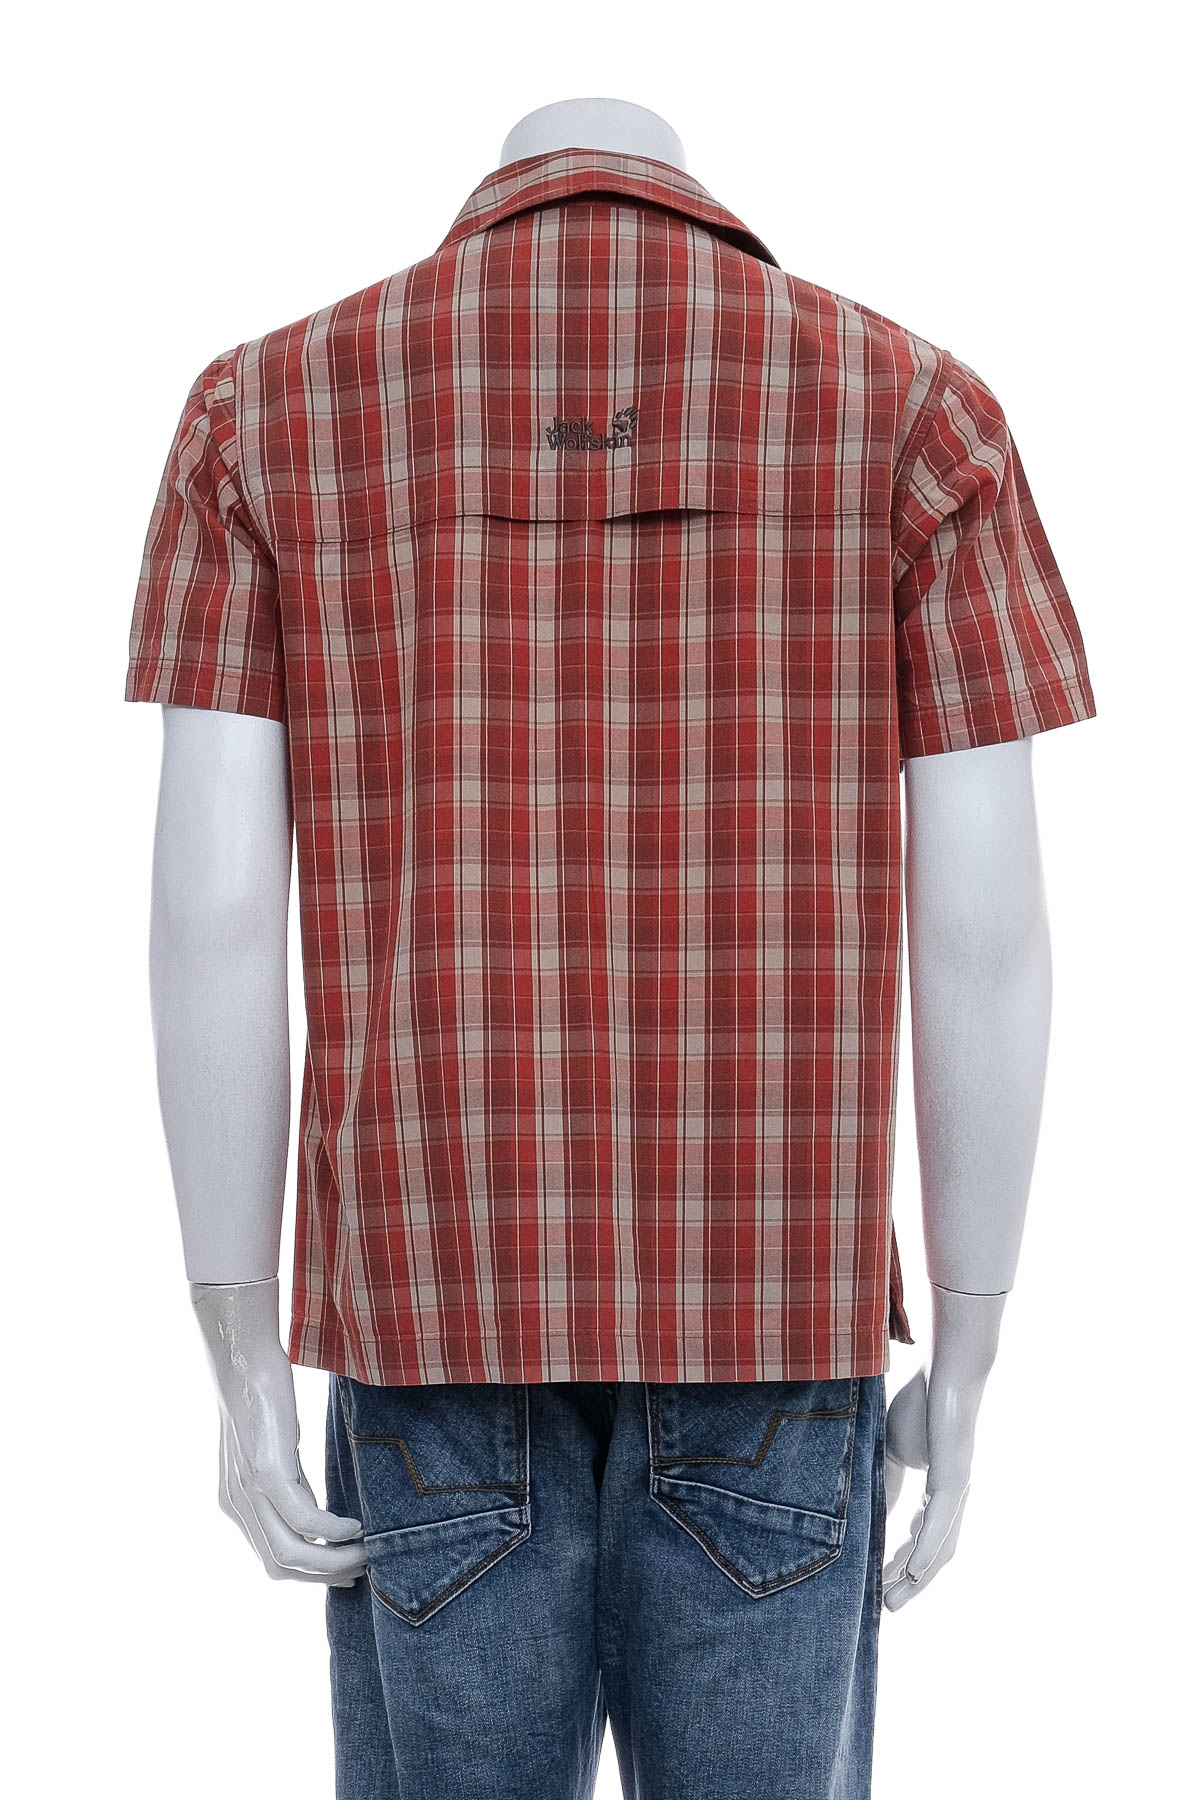 Men's shirt - Jack Wolfskin - 1